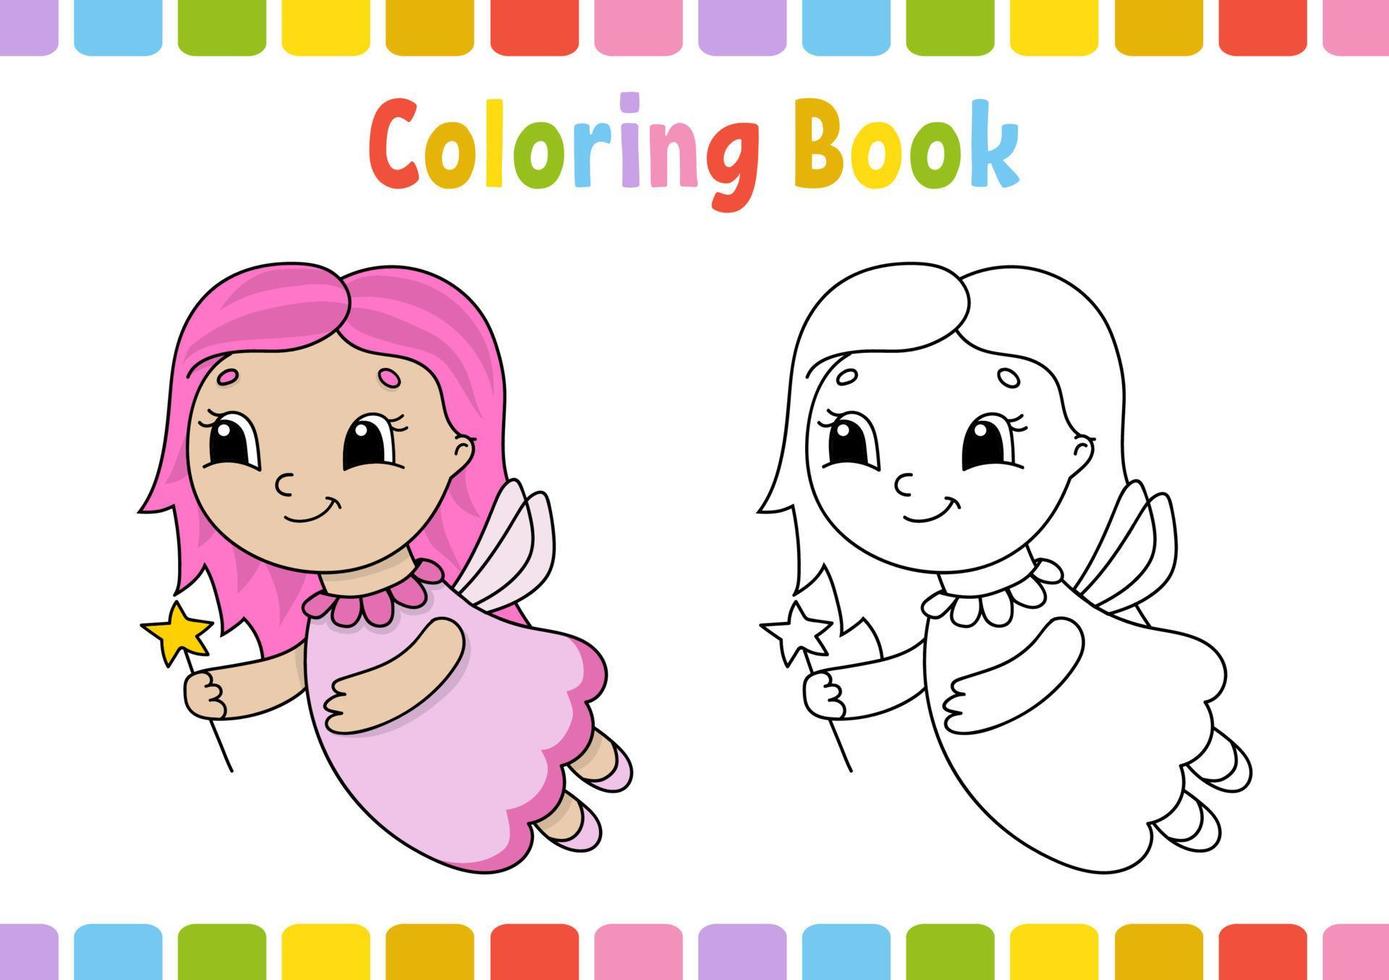 libro da colorare per bambini. carattere allegro. semplice illustrazione vettoriale piatto isolato in stile cartone animato carino.